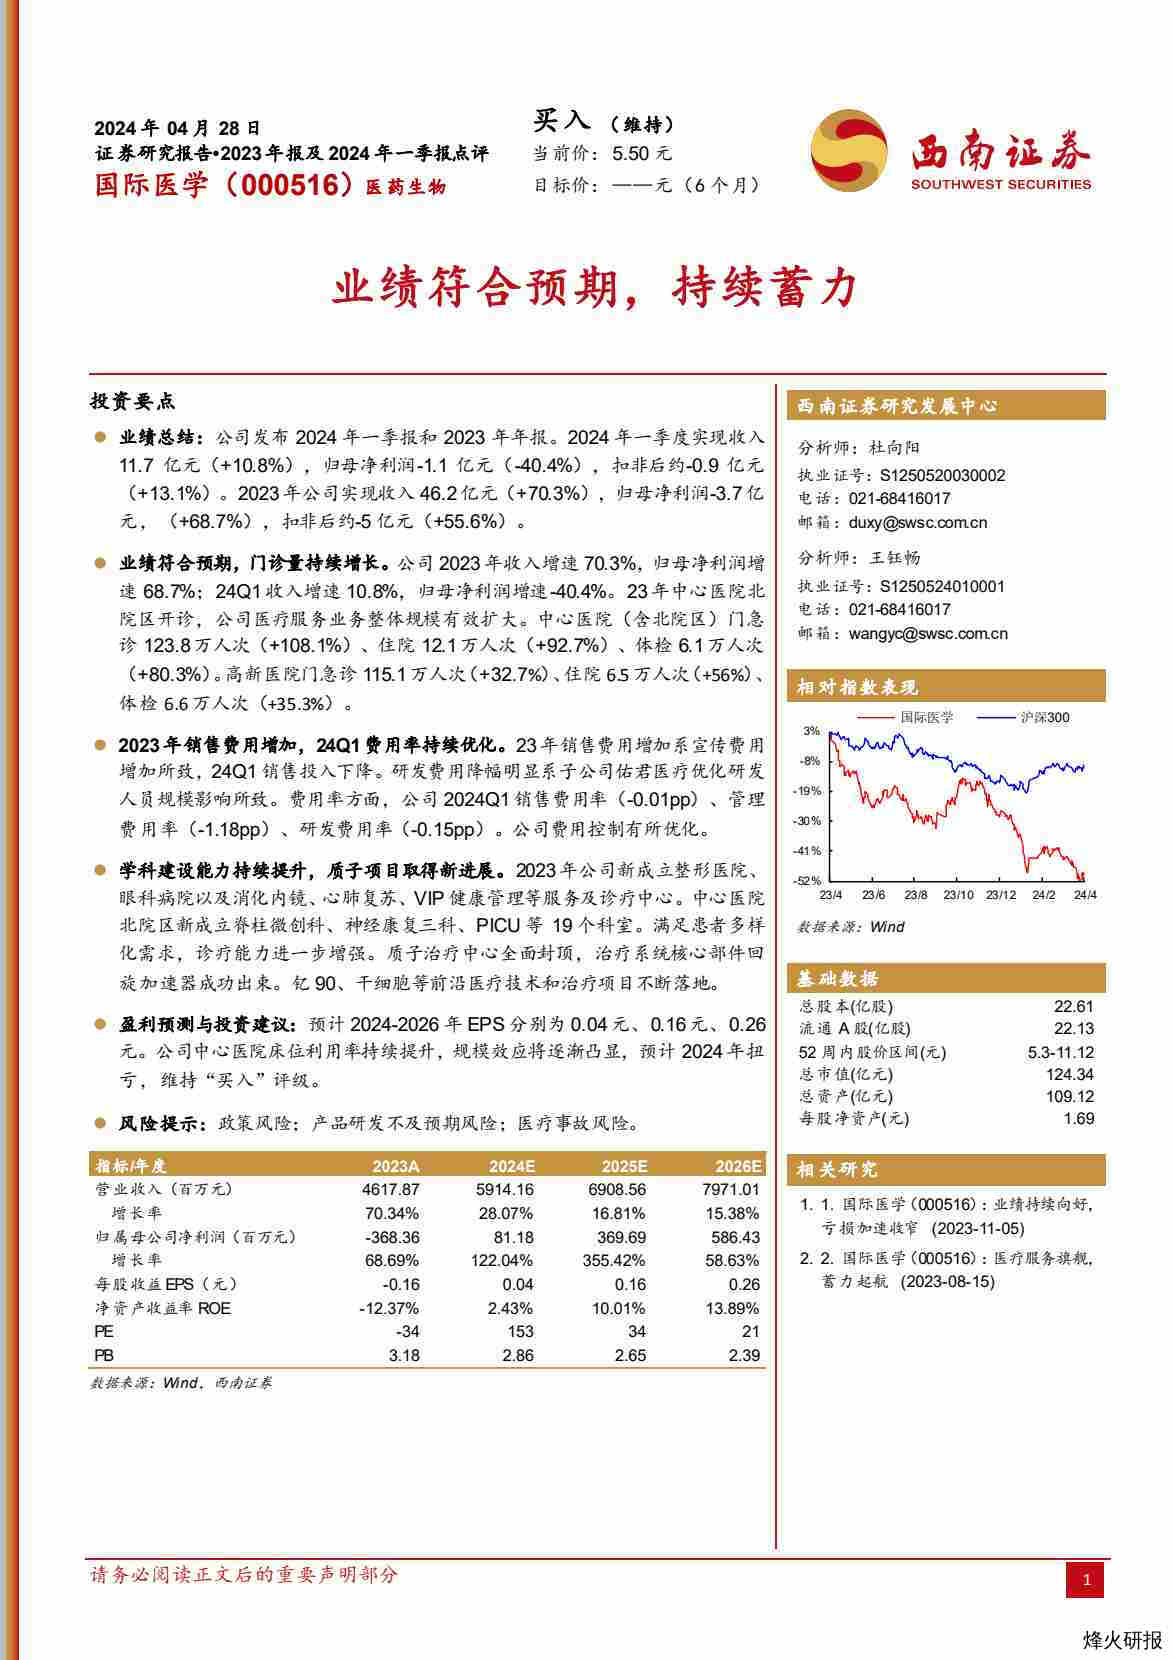 【西南证券】业绩符合预期，持续蓄力.pdf-第一页